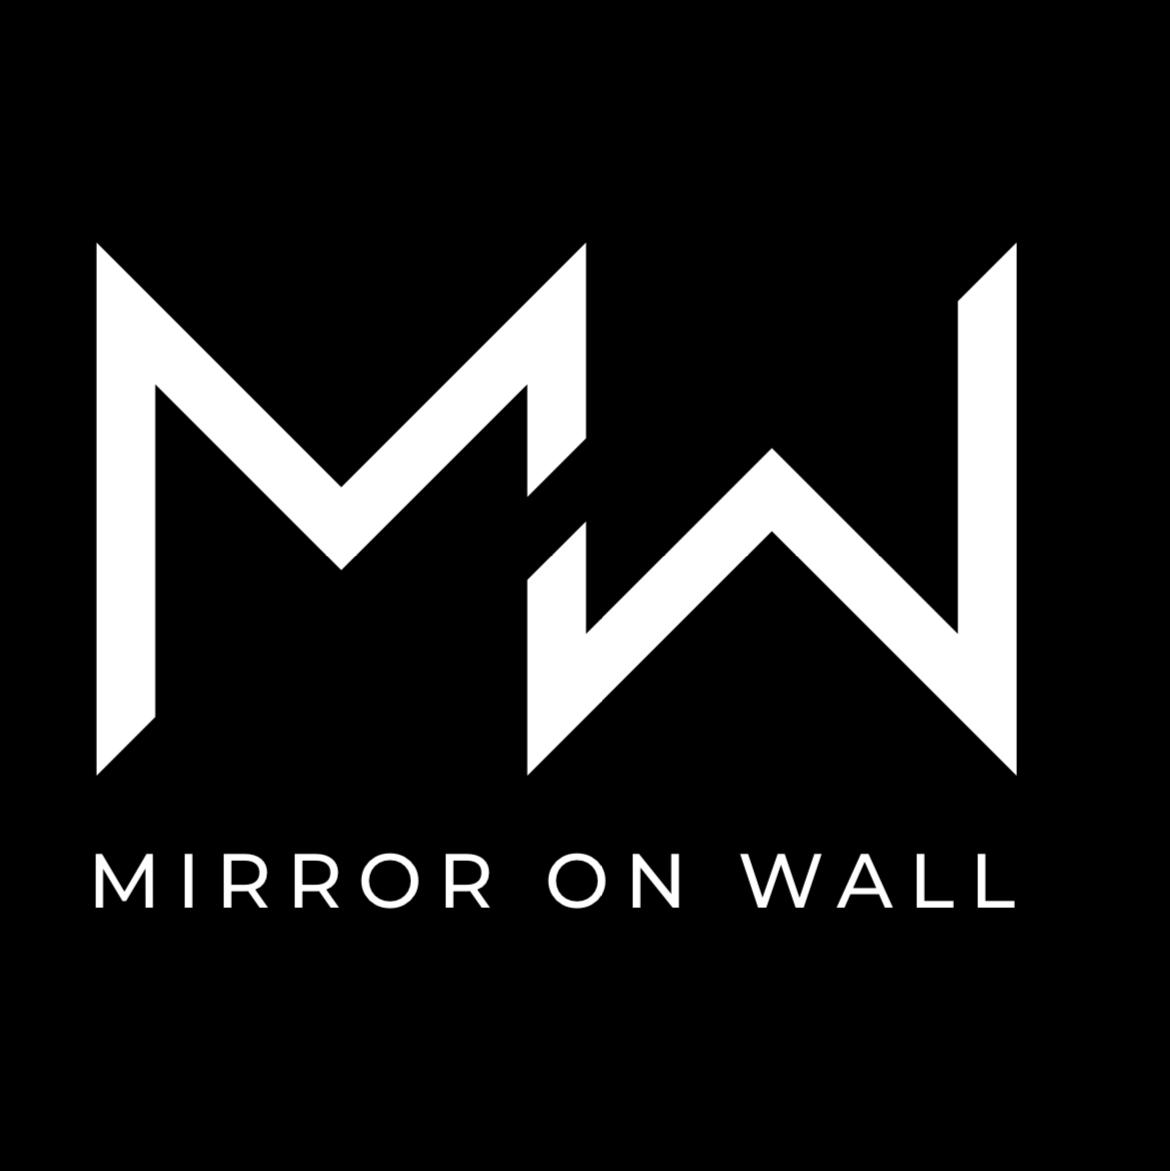 MirrorOnWall's images